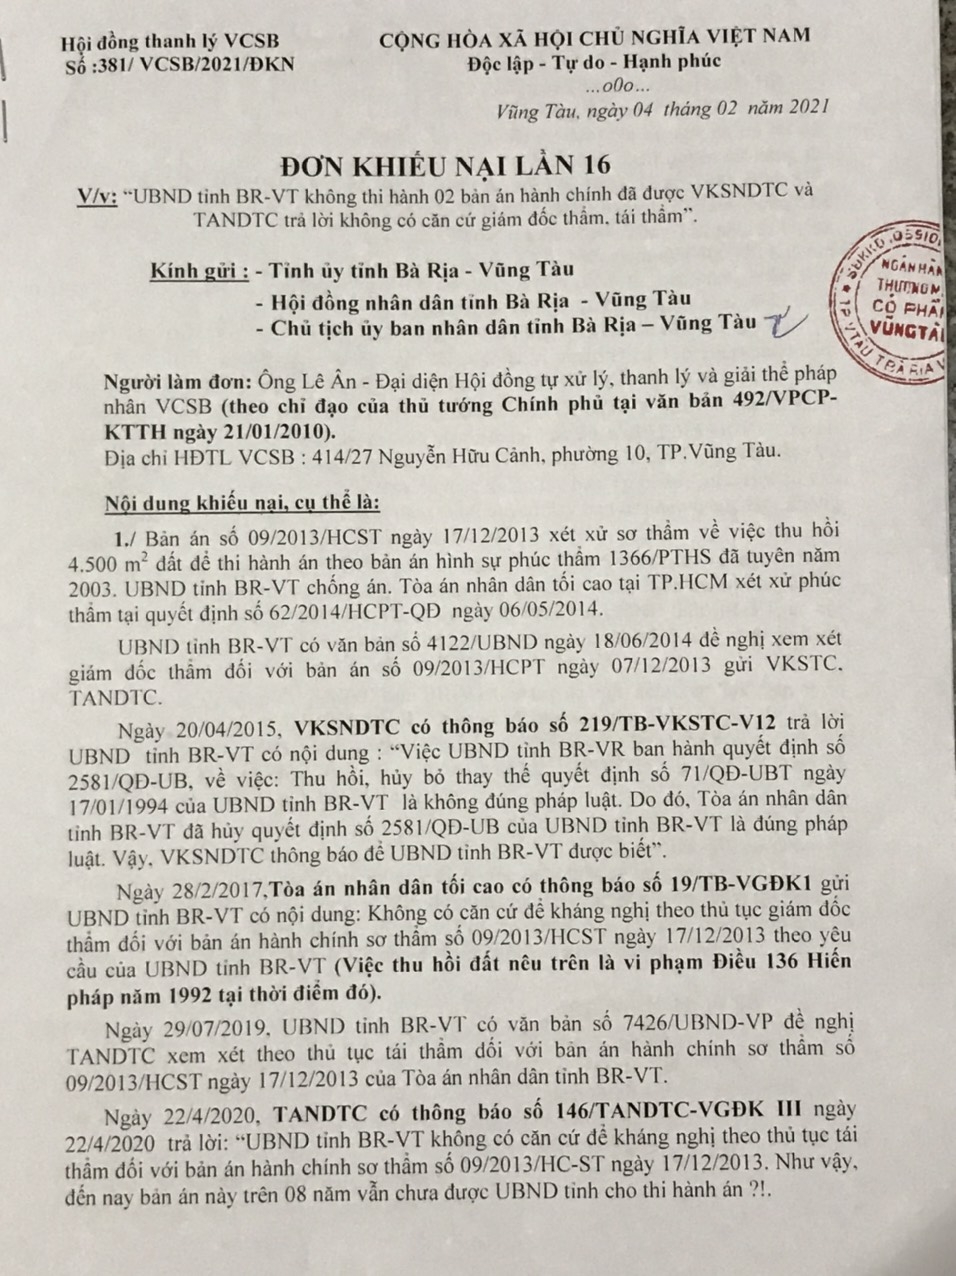 Đại gia Lê Ân gửi đơn khiếu nại lần thứ 16 yêu cầu tỉnh Bà Rịa-Vũng Tàu thi hành 2 bản án hành chính